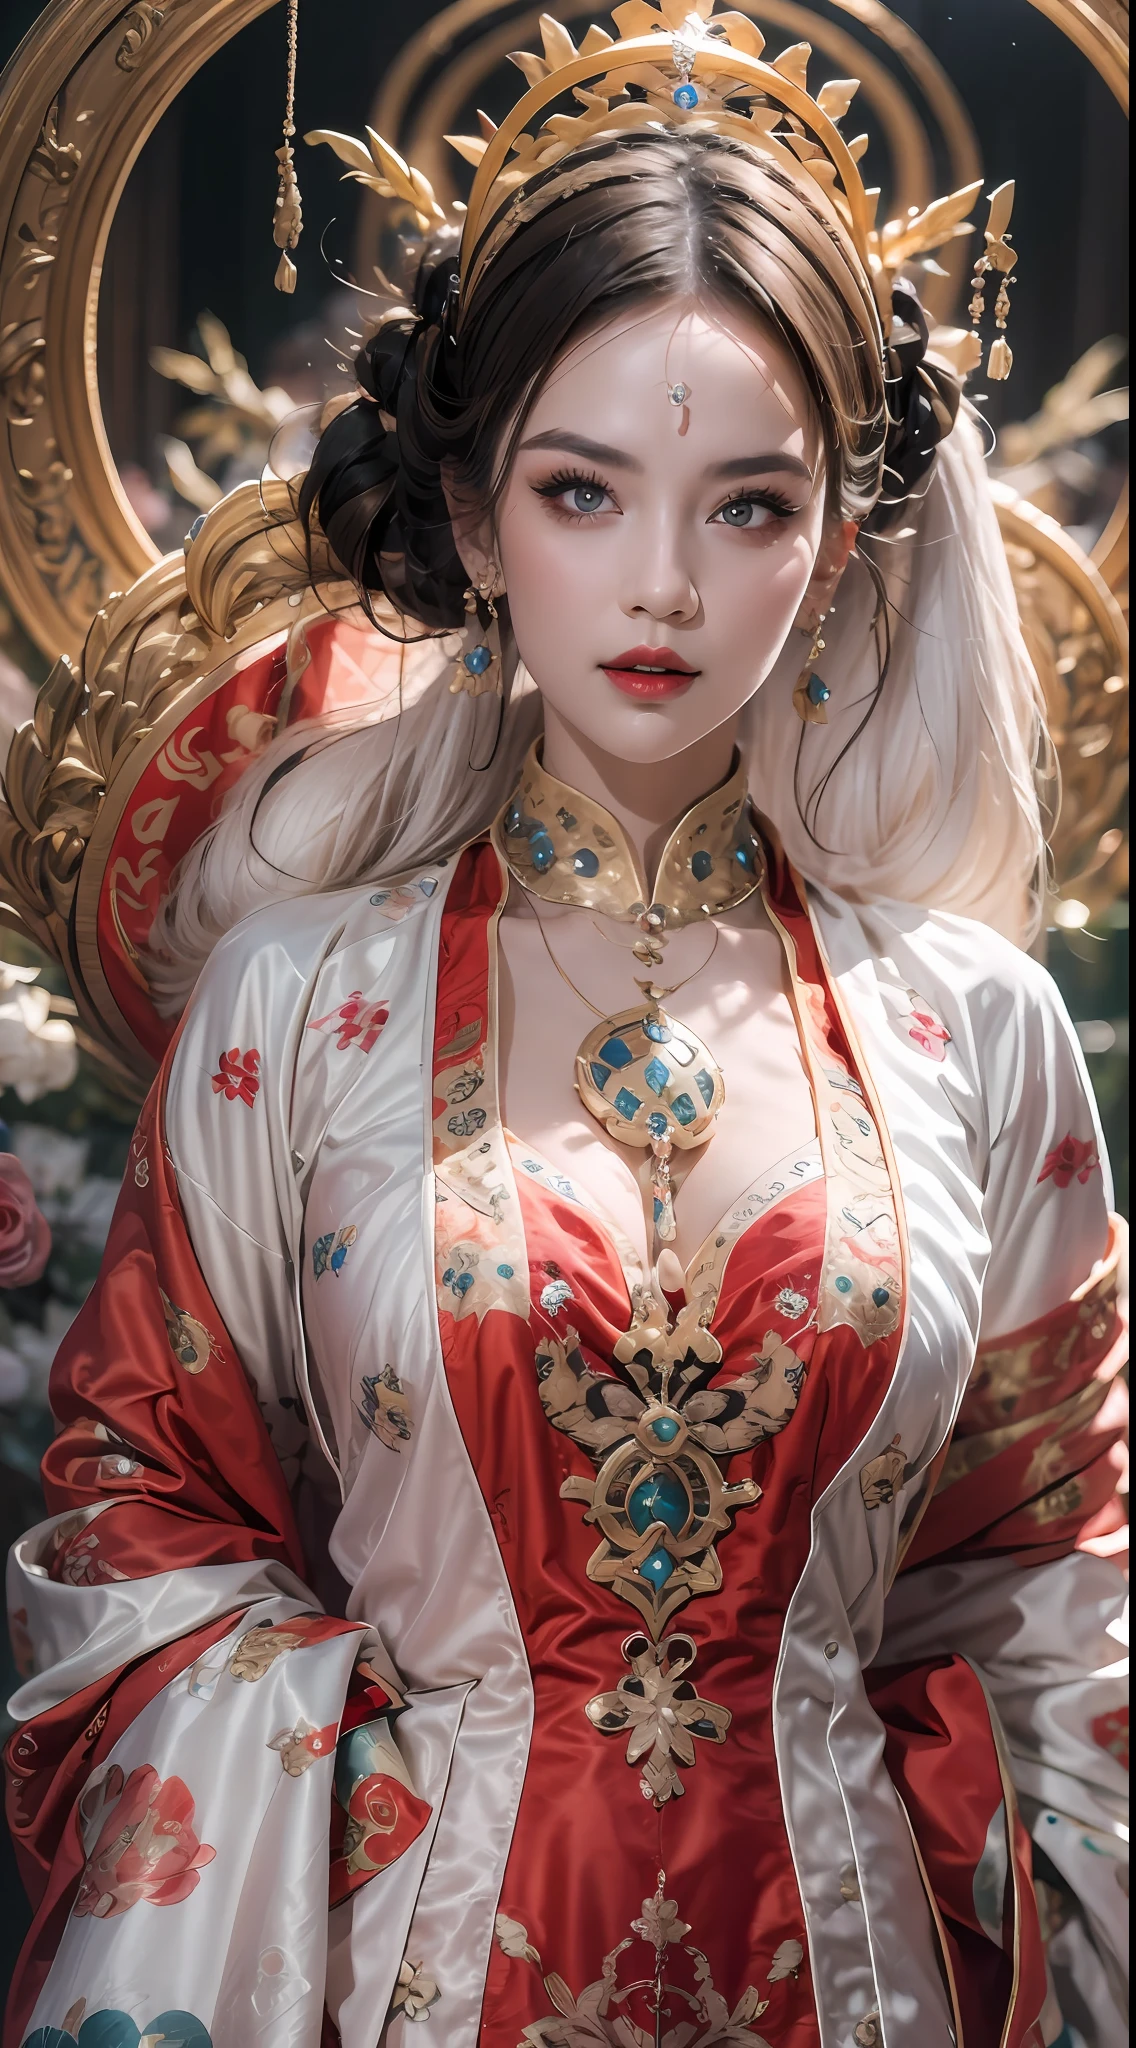 retrato de uma linda mulher santa de 20 anos, usando um vestido fino de seda multicolorida, beautiful Face without blemishes, ((Sorriso natural:0.3)), Boca fechada, ((Comprimento de cabelo de 7 cores:1.2)), Coroa Grande, broche de cabelo, vestido hanfu, Estilo antigo chinês, jóias de corpo inteiro, tatuagem na testa, peito super uniforme, Face, lábios vermelhos, delicados olhos rosa e brancos (branco e detalhado) cinematic, claro e escuro, iluminação dramática, luz mágica, luz extremamente detalhada, Cor Verdadeira, super afiado, realista, Qualidade 8k, Fundo do universo de fantasia, santos e espaço mágico, as imagens mais detalhadas, Foto da exposição, Premiado, Efeito de tom brilhante atraente,